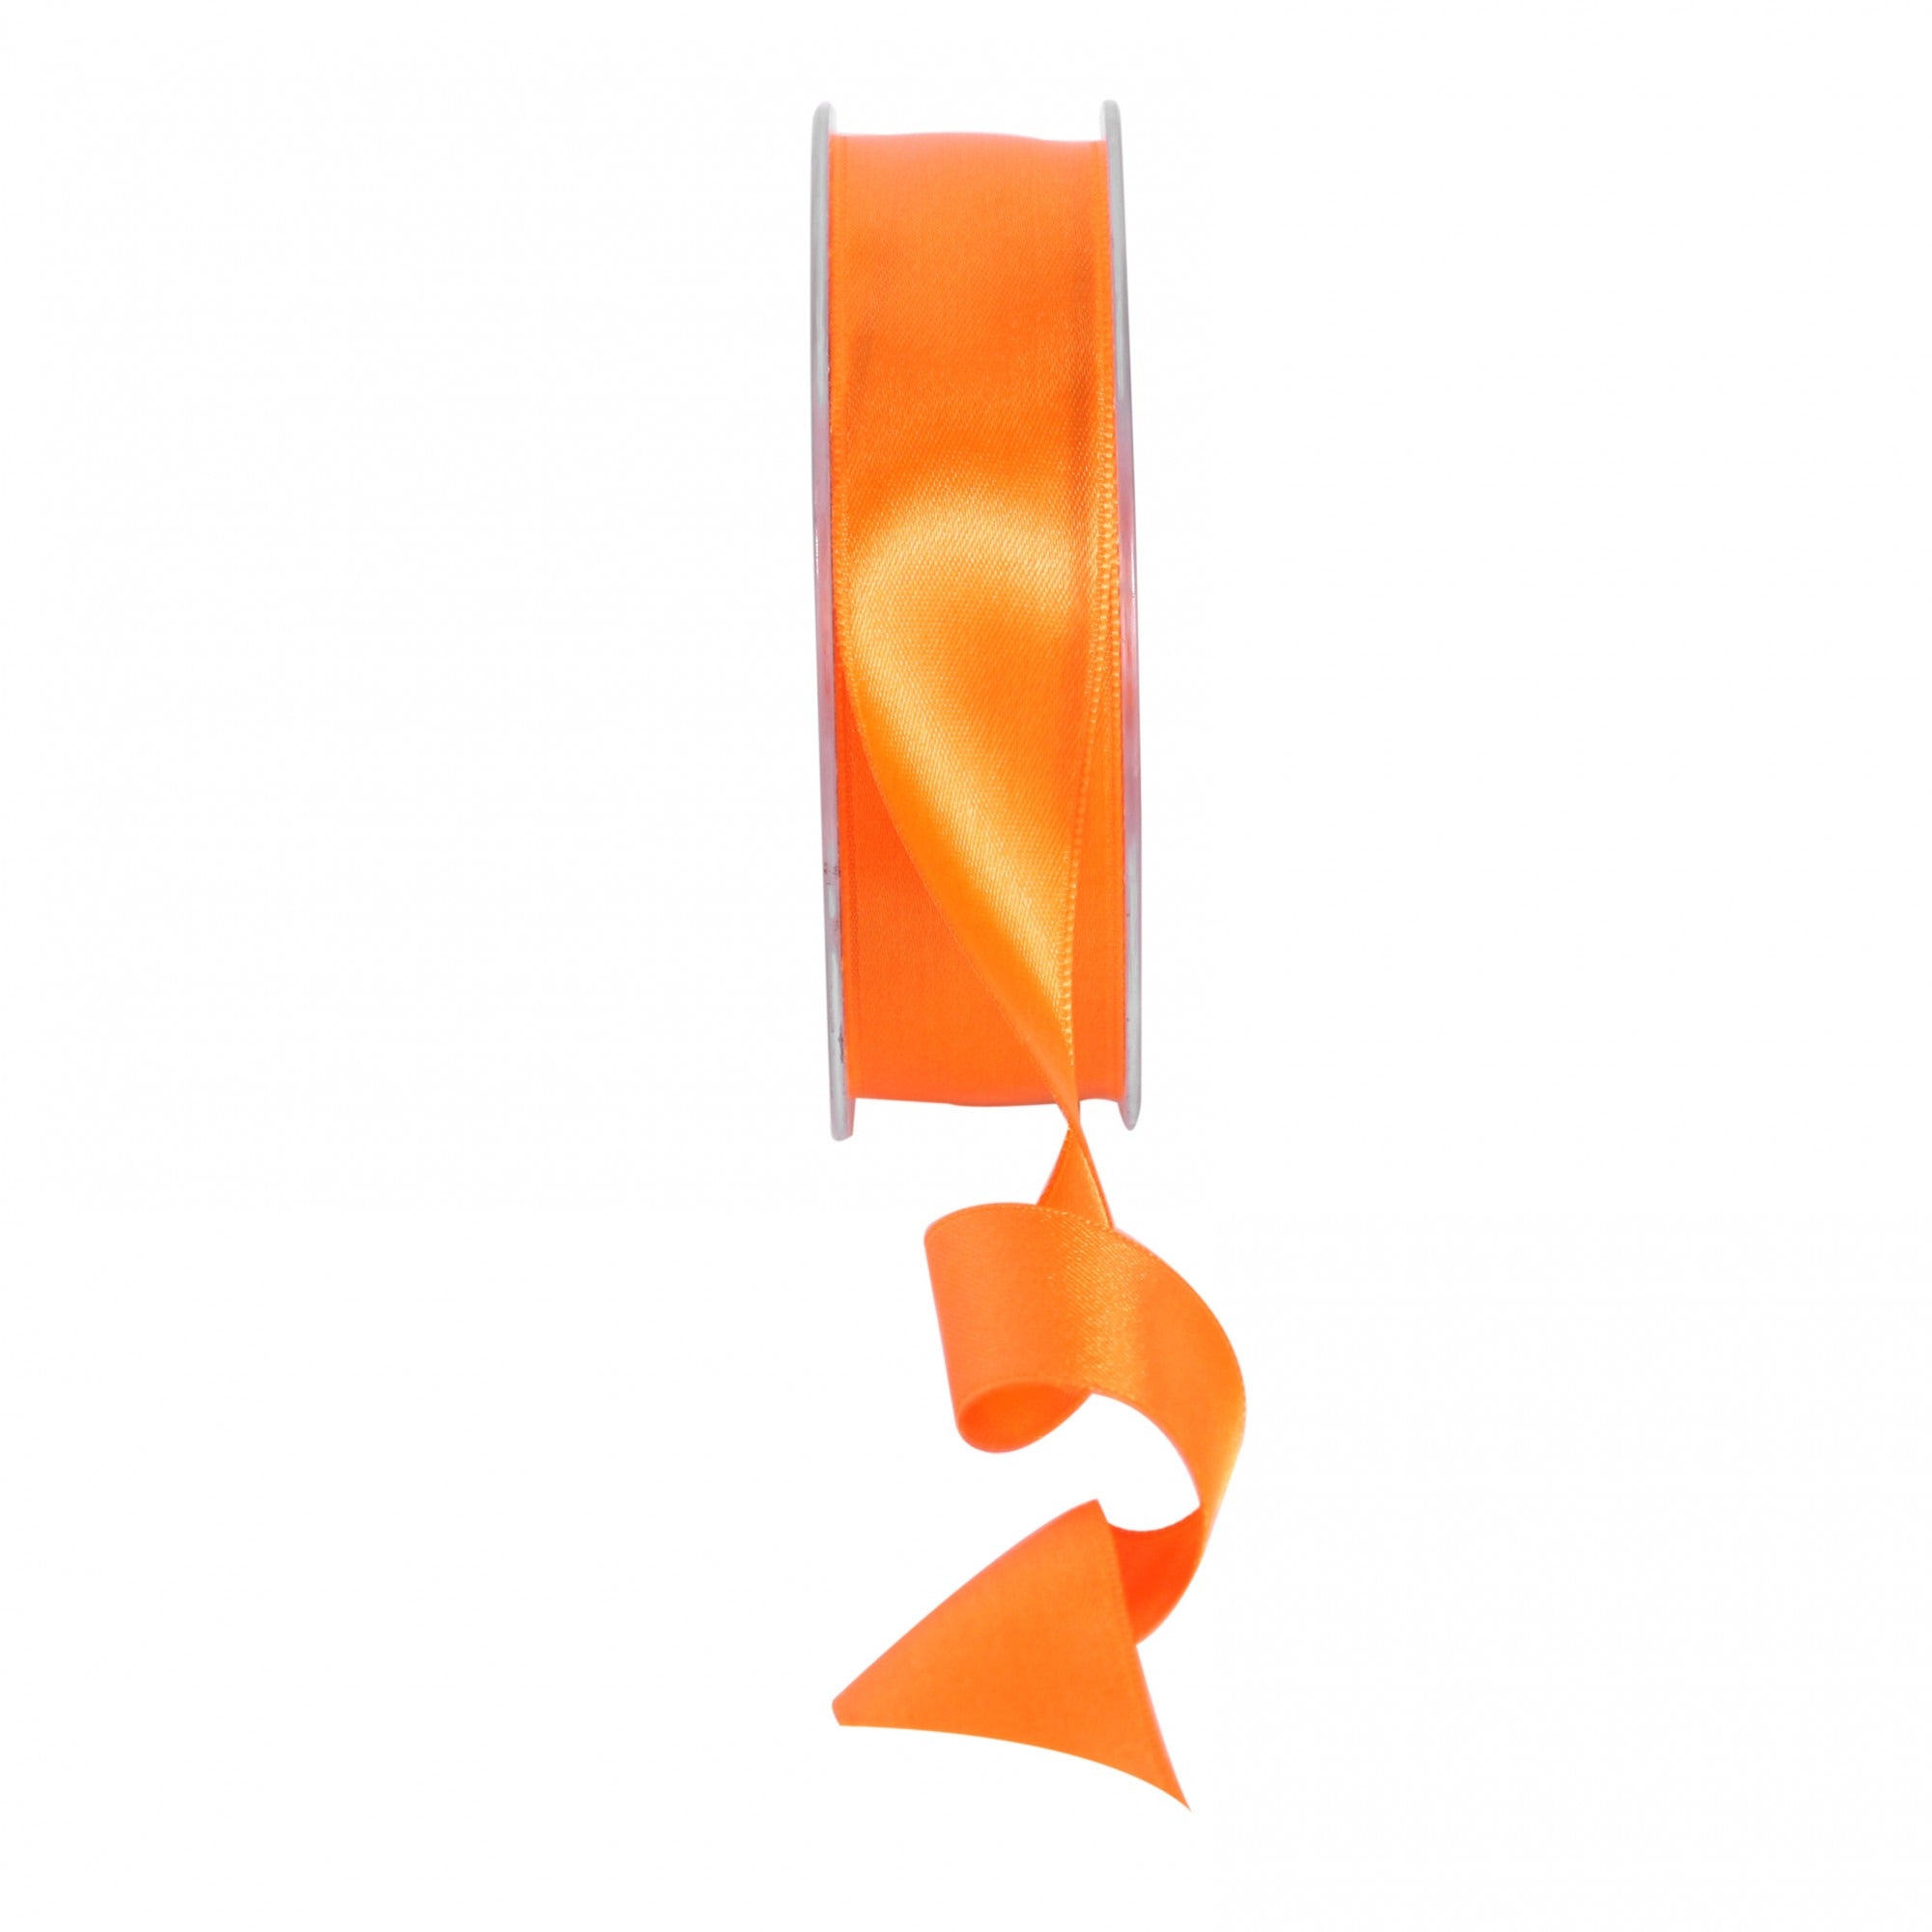 View Orange Satin Ribbon 25mm information